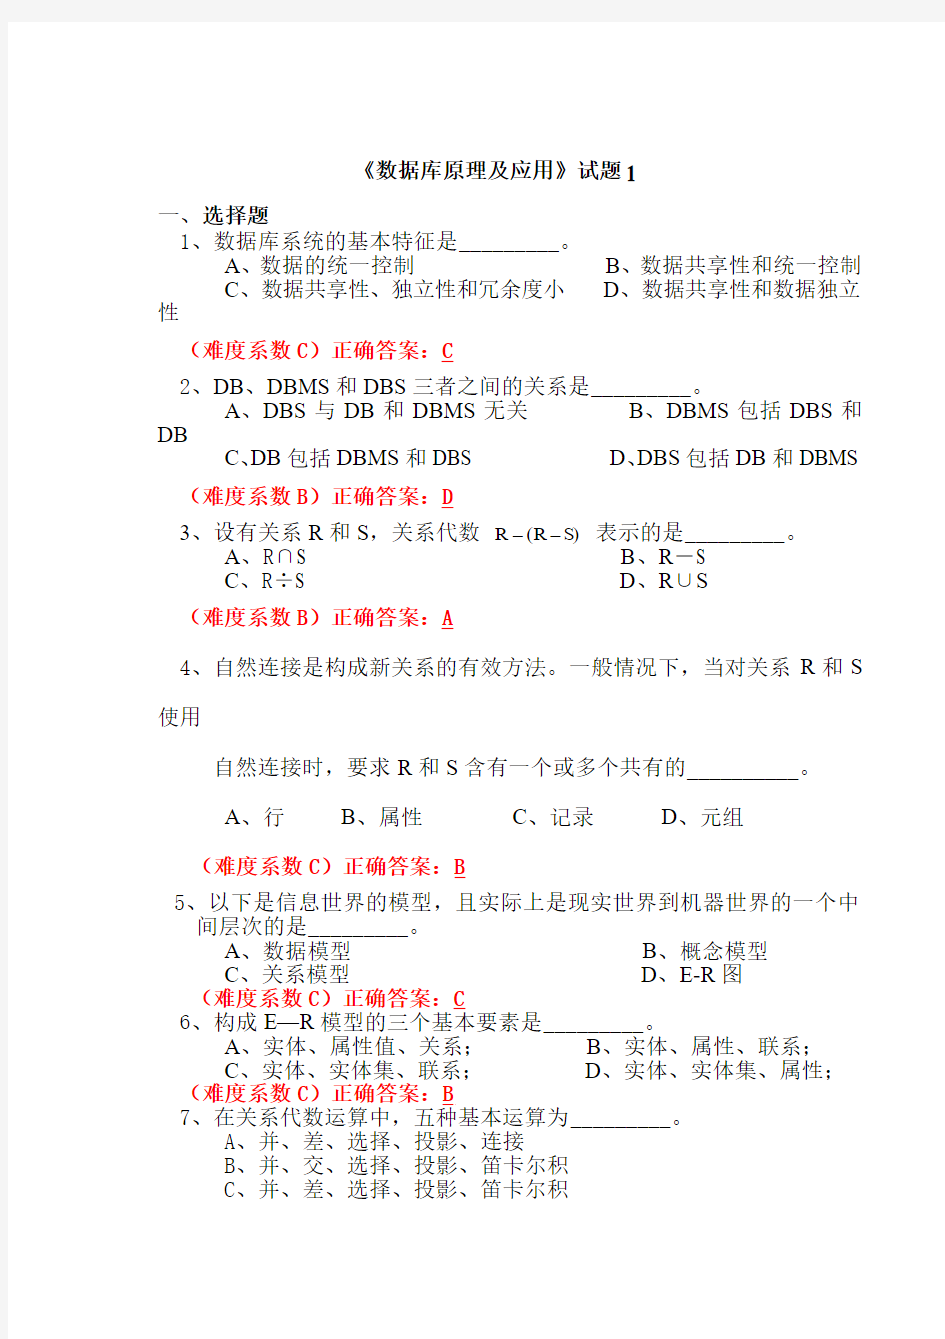 广东海洋大学数据库期末试题和答案3套(完整版,考试必出)